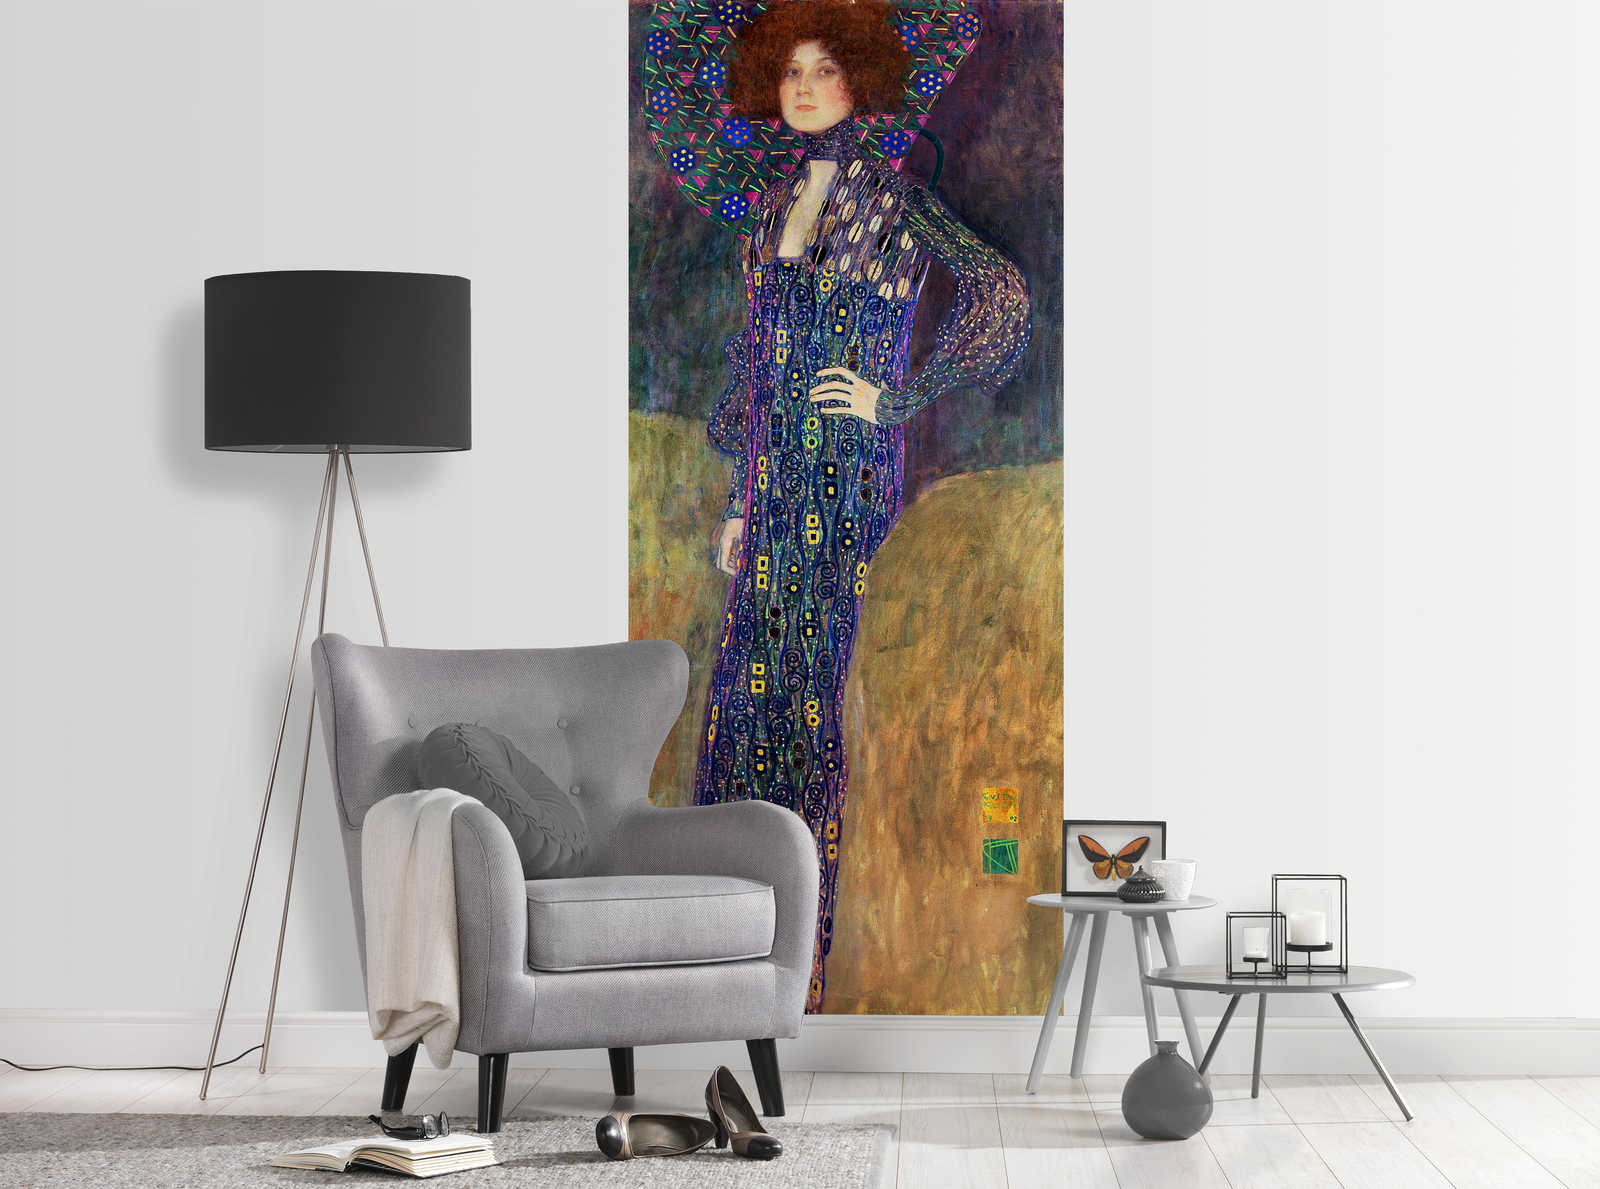             Papier peint "Emilie Floege" de Gustav Klimt
        